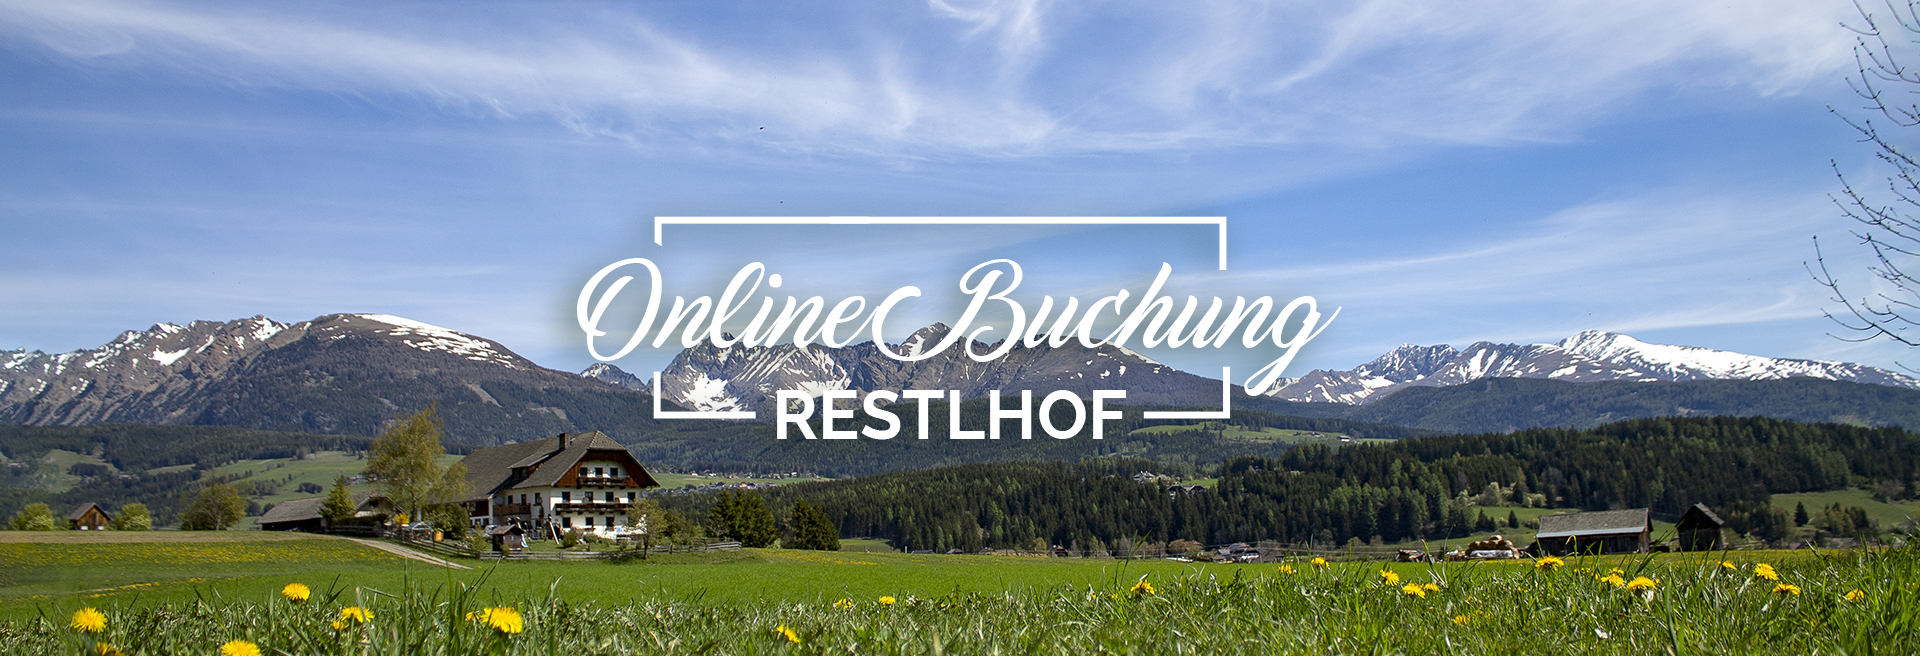 REH Online Buchung Header